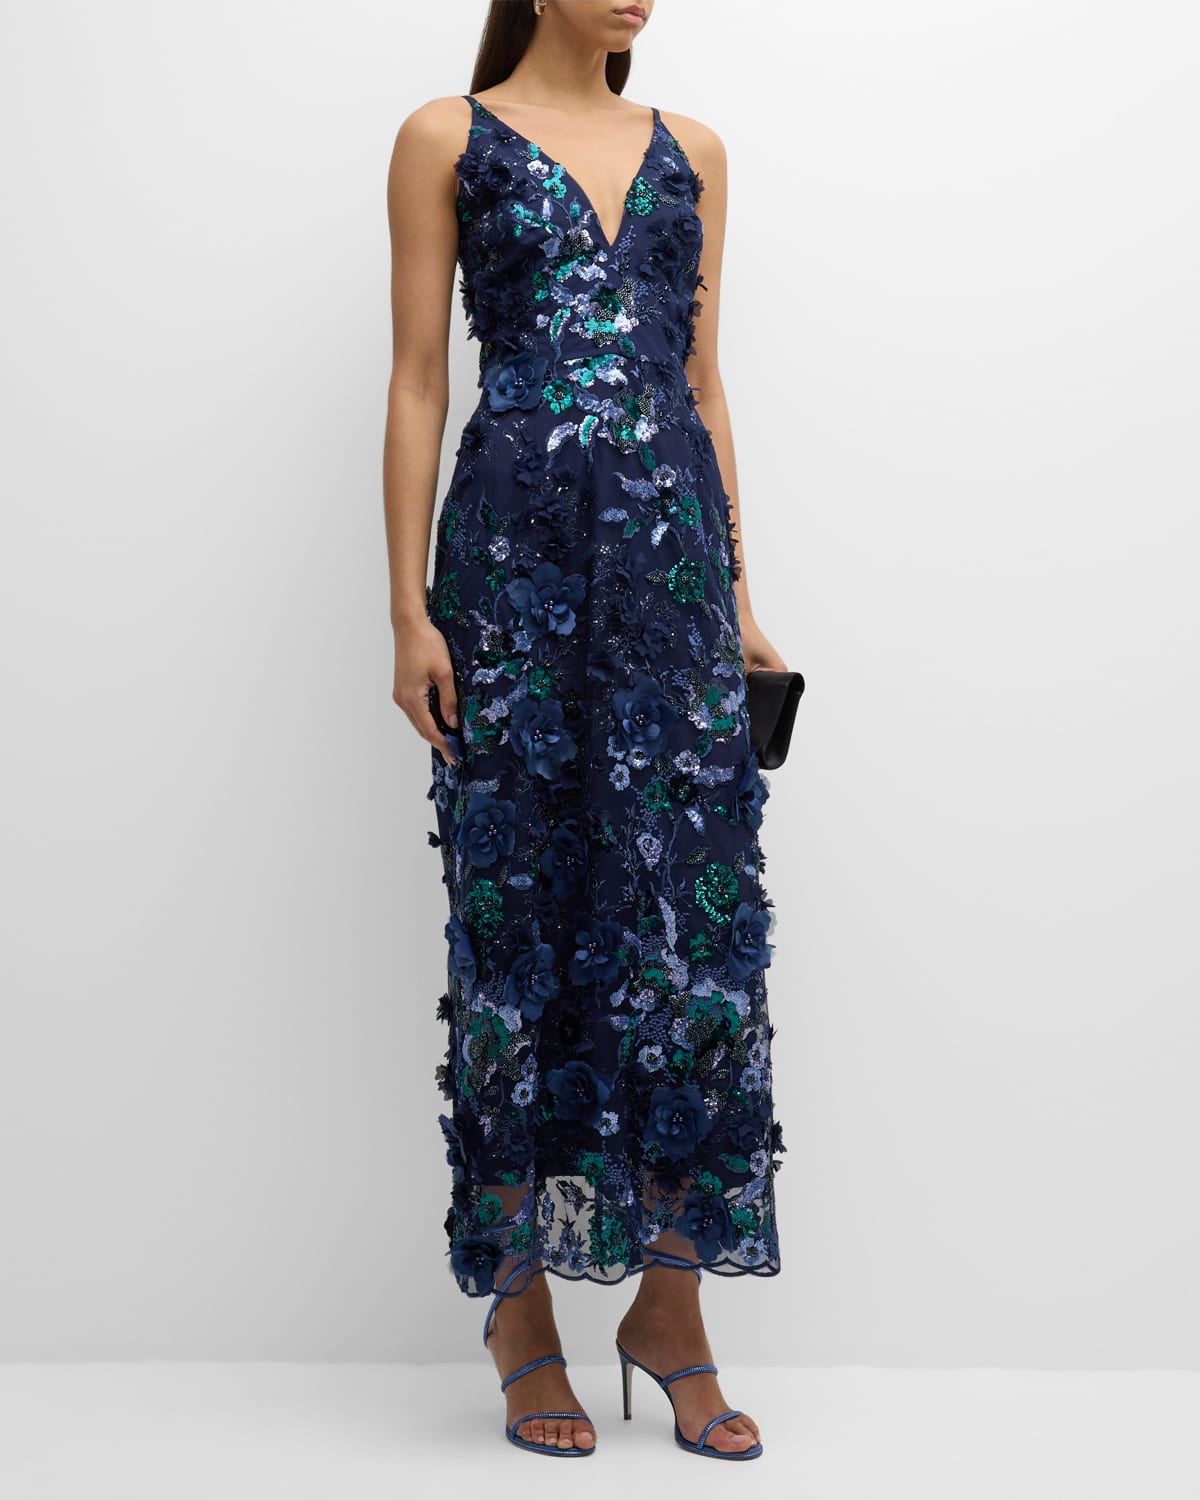 Nora Deep V-Neck Sequin & Applique Midi Dress